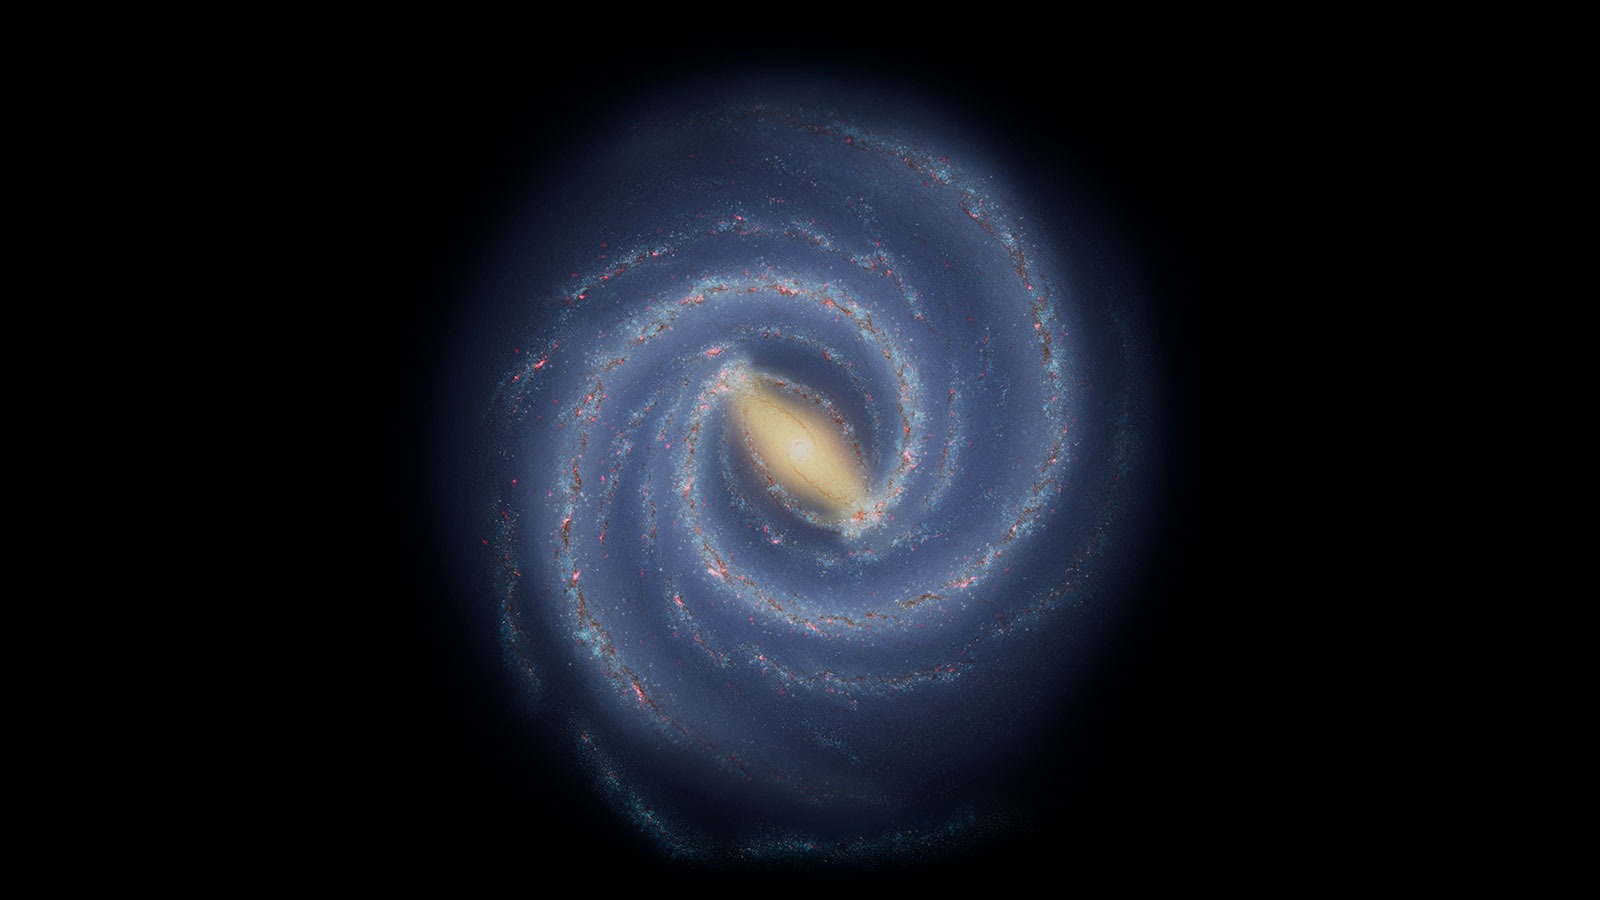 Mliječna staza ima četiri spiralna kraka, ali astronomi još uvijek raspravljaju o njihovim veličinama i položajima (© NASA/JPL-Caltech).